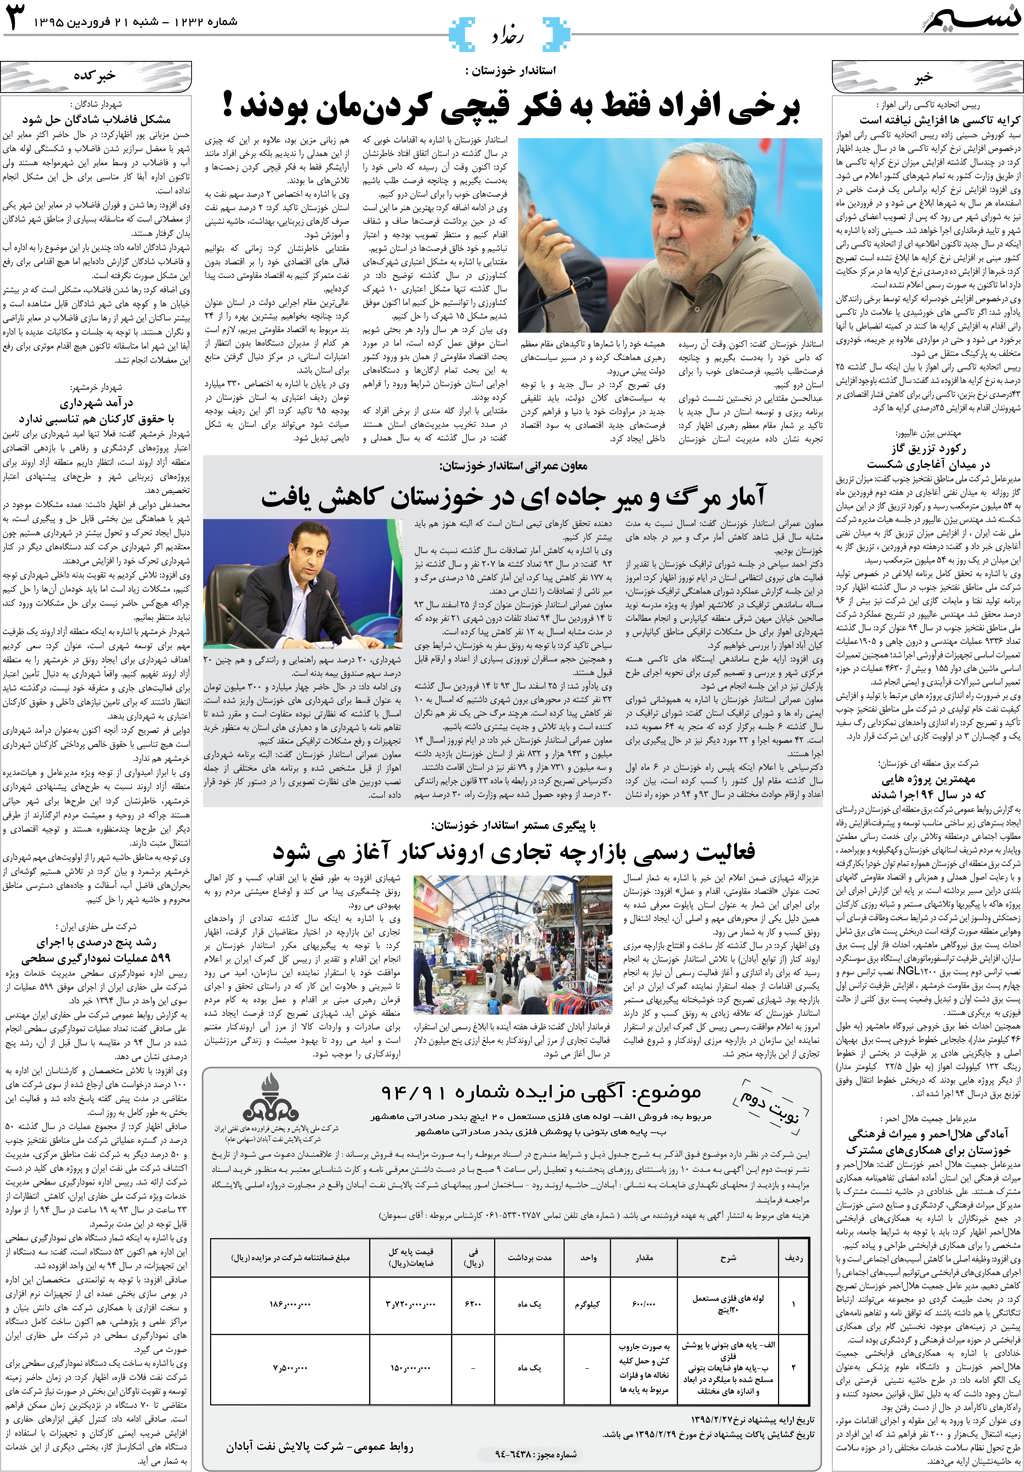 صفحه رخداد روزنامه نسیم شماره 1232